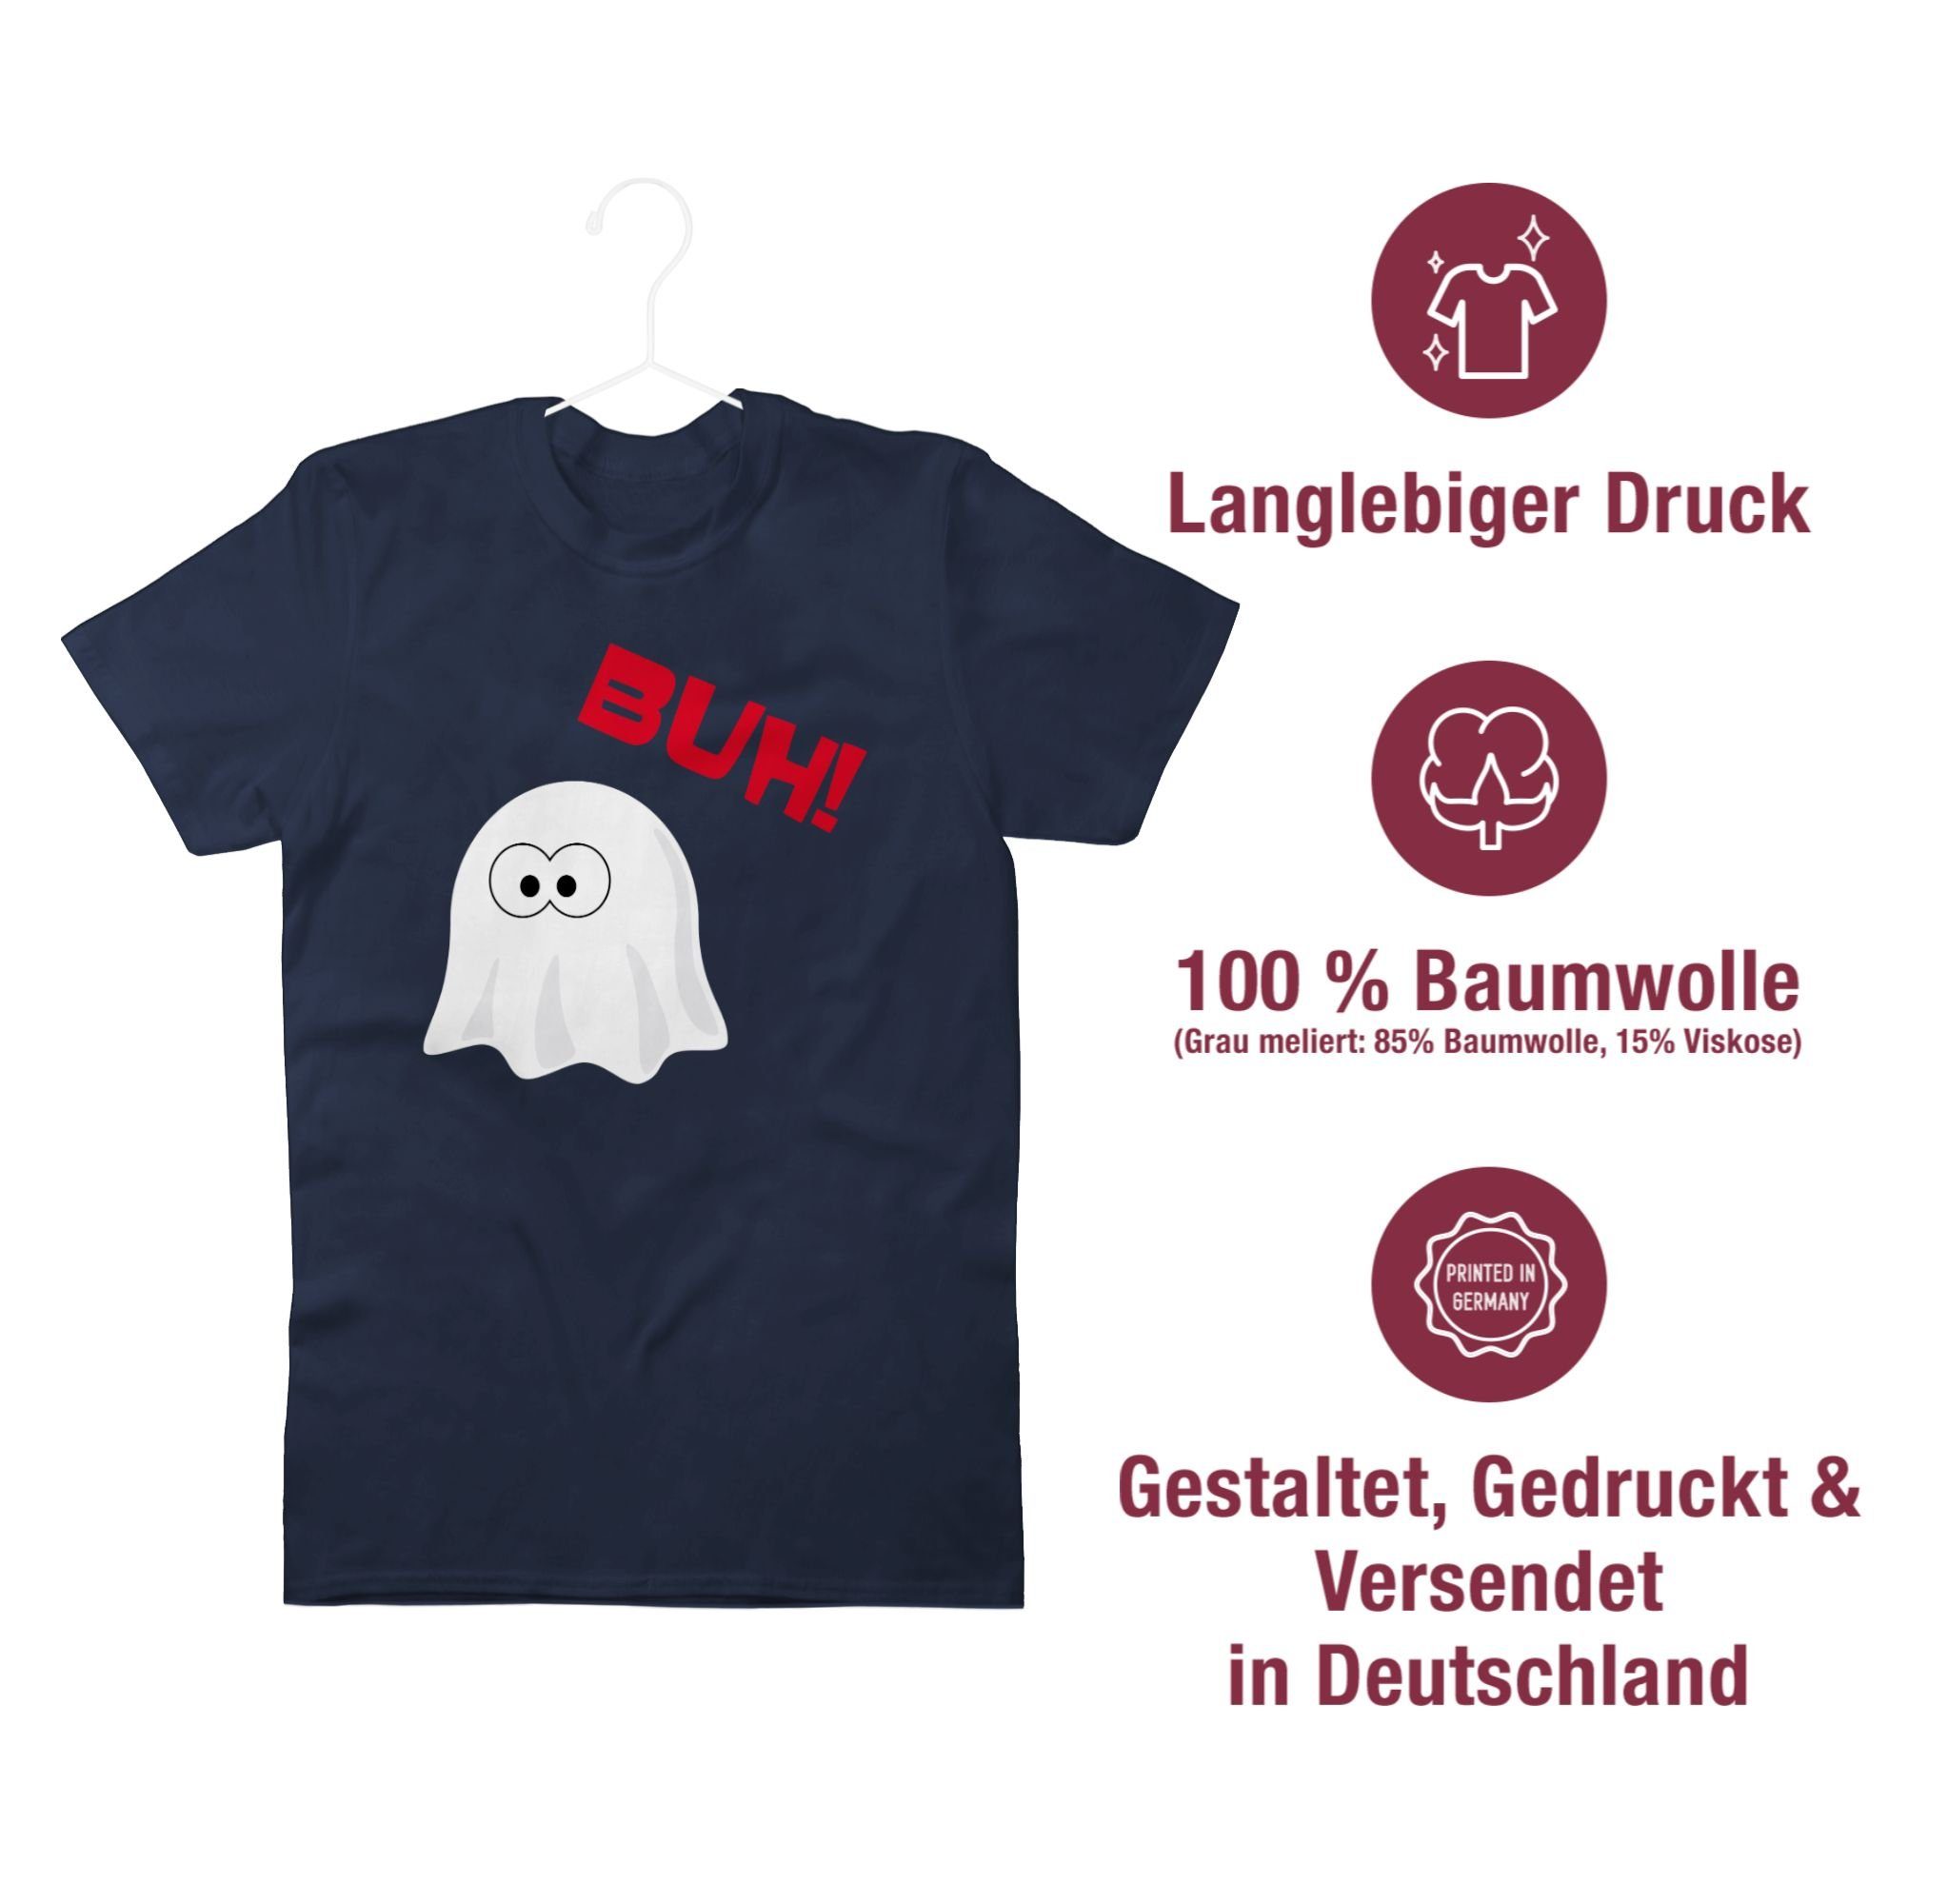 Shirtracer Kostüme Gespenst Halloween Navy Kleiner T-Shirt - Blau Buh Herren Ghost Geist 2